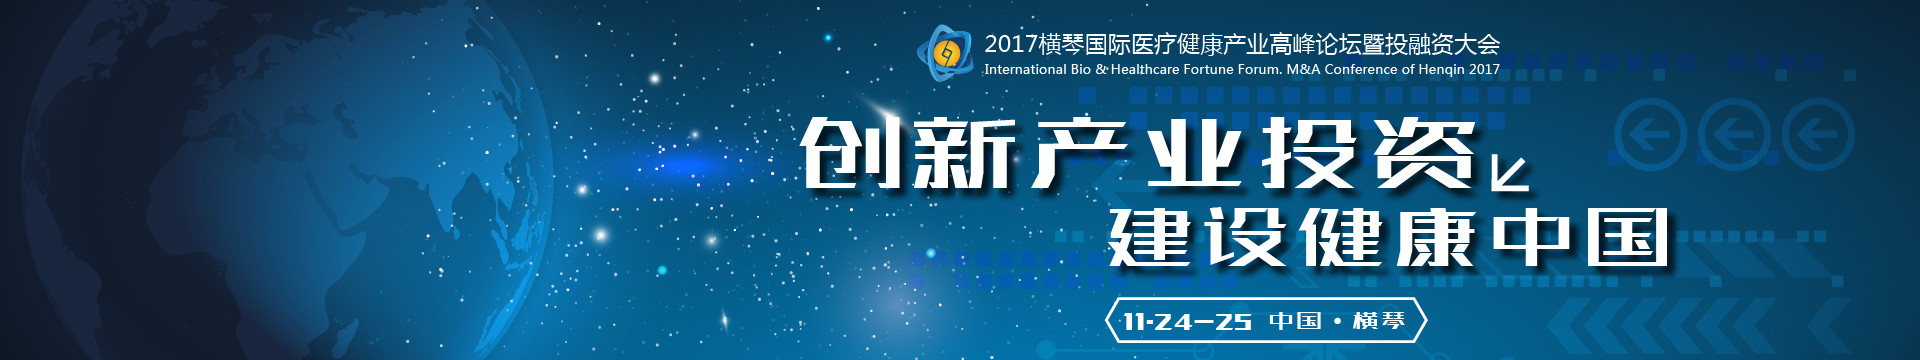 第三届横琴国际医疗健康产业高峰论坛暨投融资大会